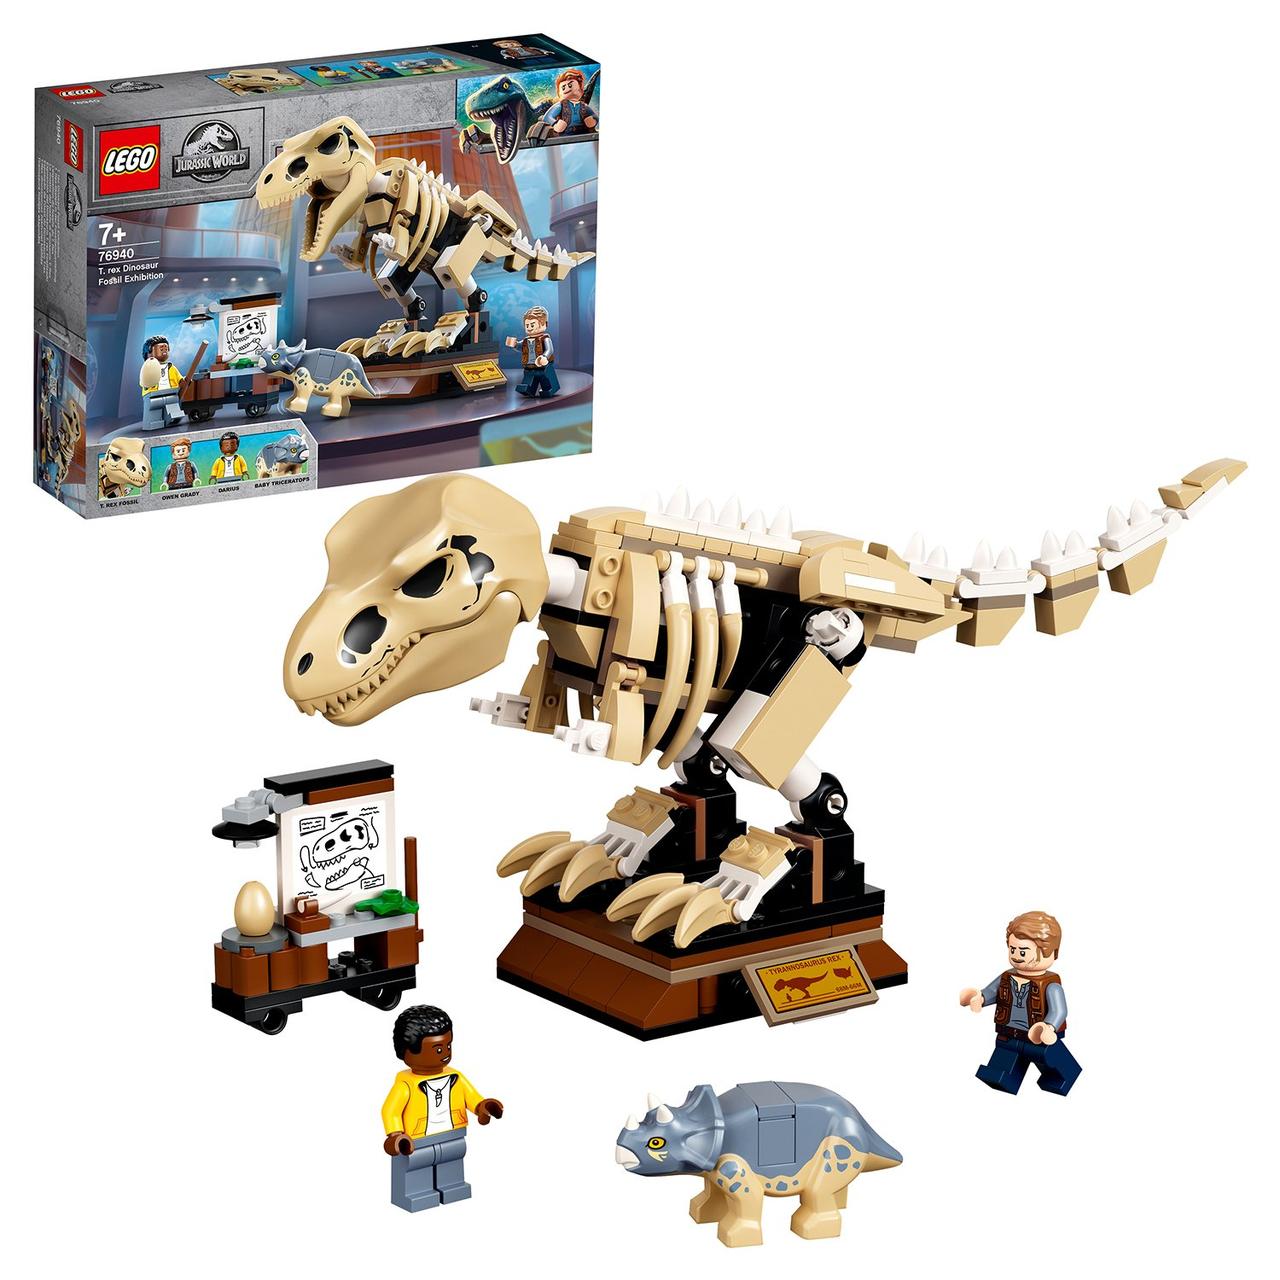 76940 Lego Jurassic World Скелет тираннозавра на выставке, Лего Мир Юрского периода